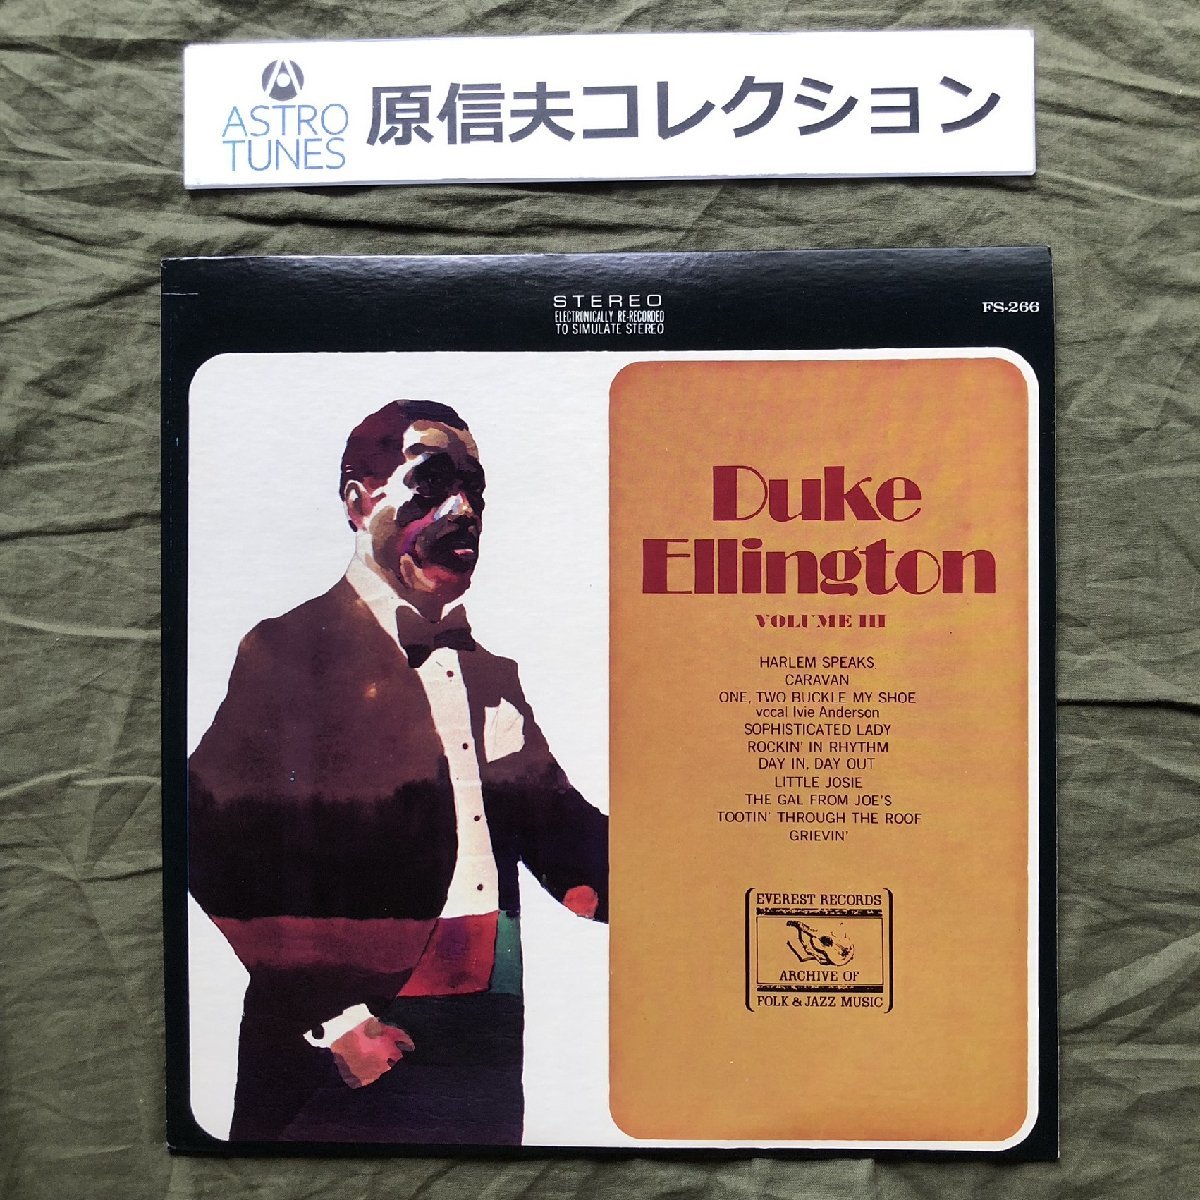 原信夫Collection 美盤 美ジャケ 激レア FS-266 米国盤 デューク・エリントン Duke Ellington LPレコード Volume III: Jazz_画像1